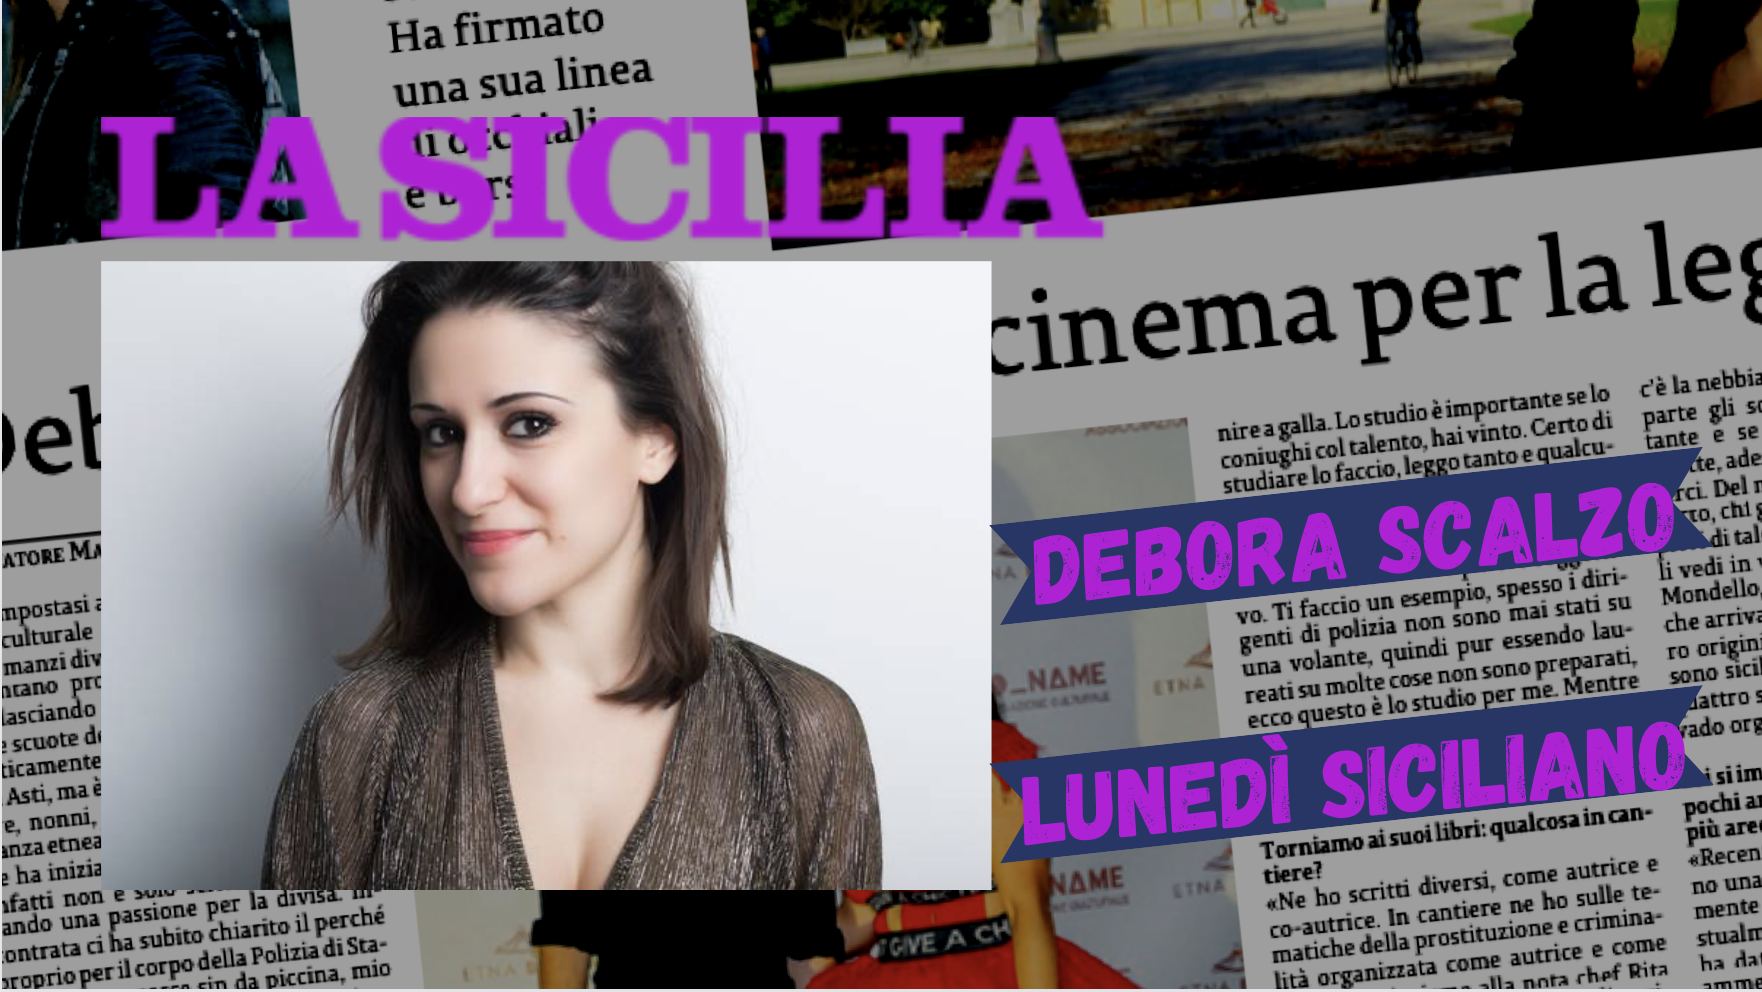 SMF per La Sicilia – Lunedì siciliano: Debora Scalzo, libri e cinema per la legalità – L’intervista